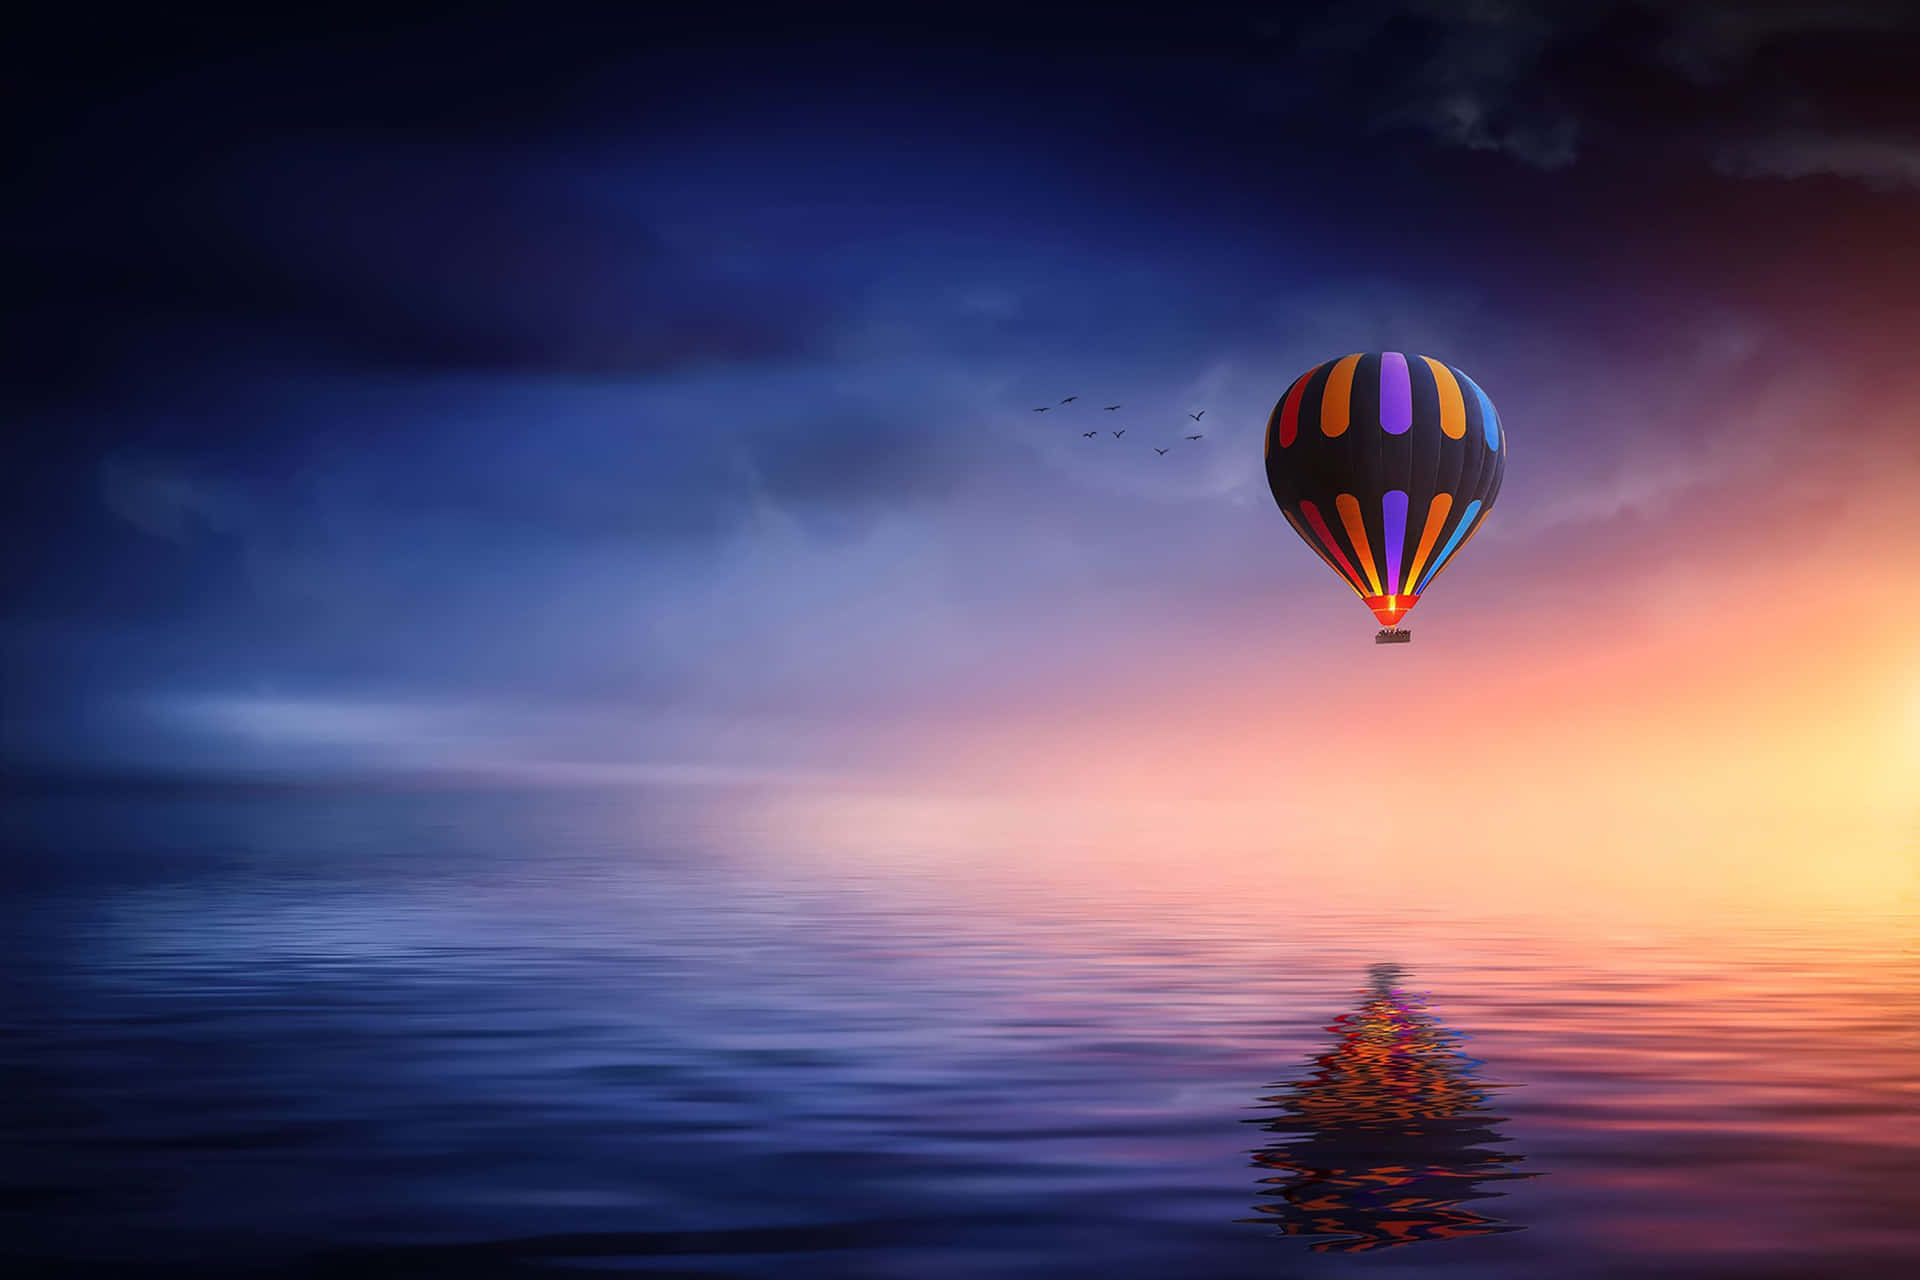 "Sailing through the clouds in a hot air balloon."